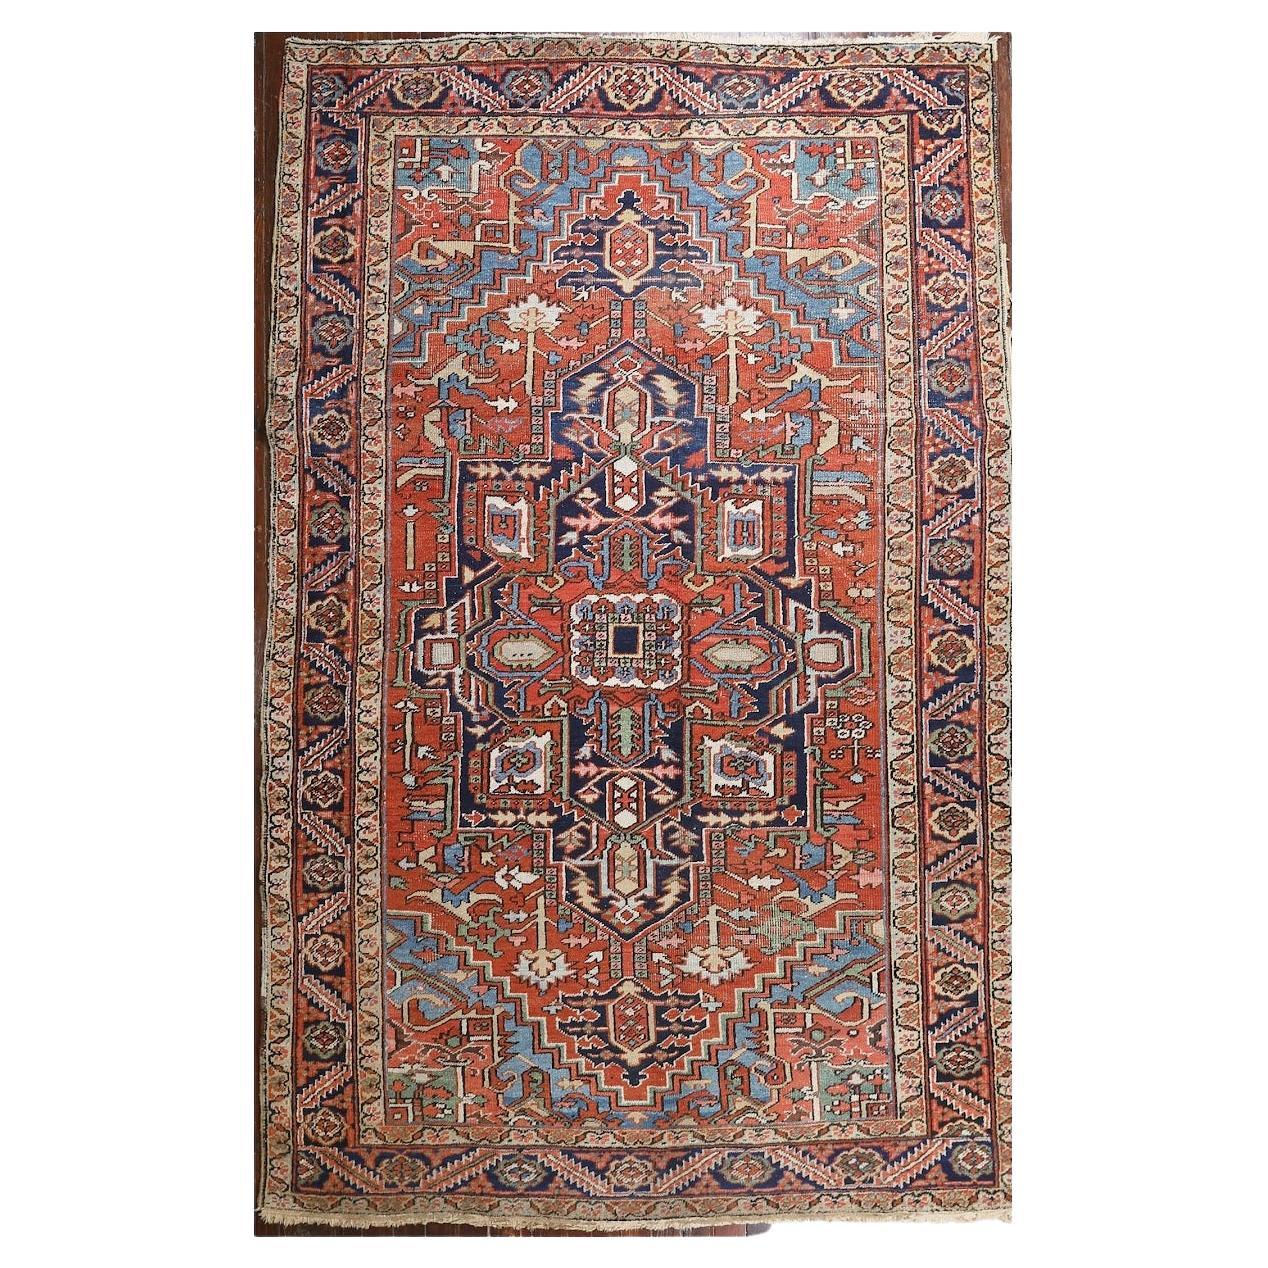 Persischer Vintage-Teppich von Heriz